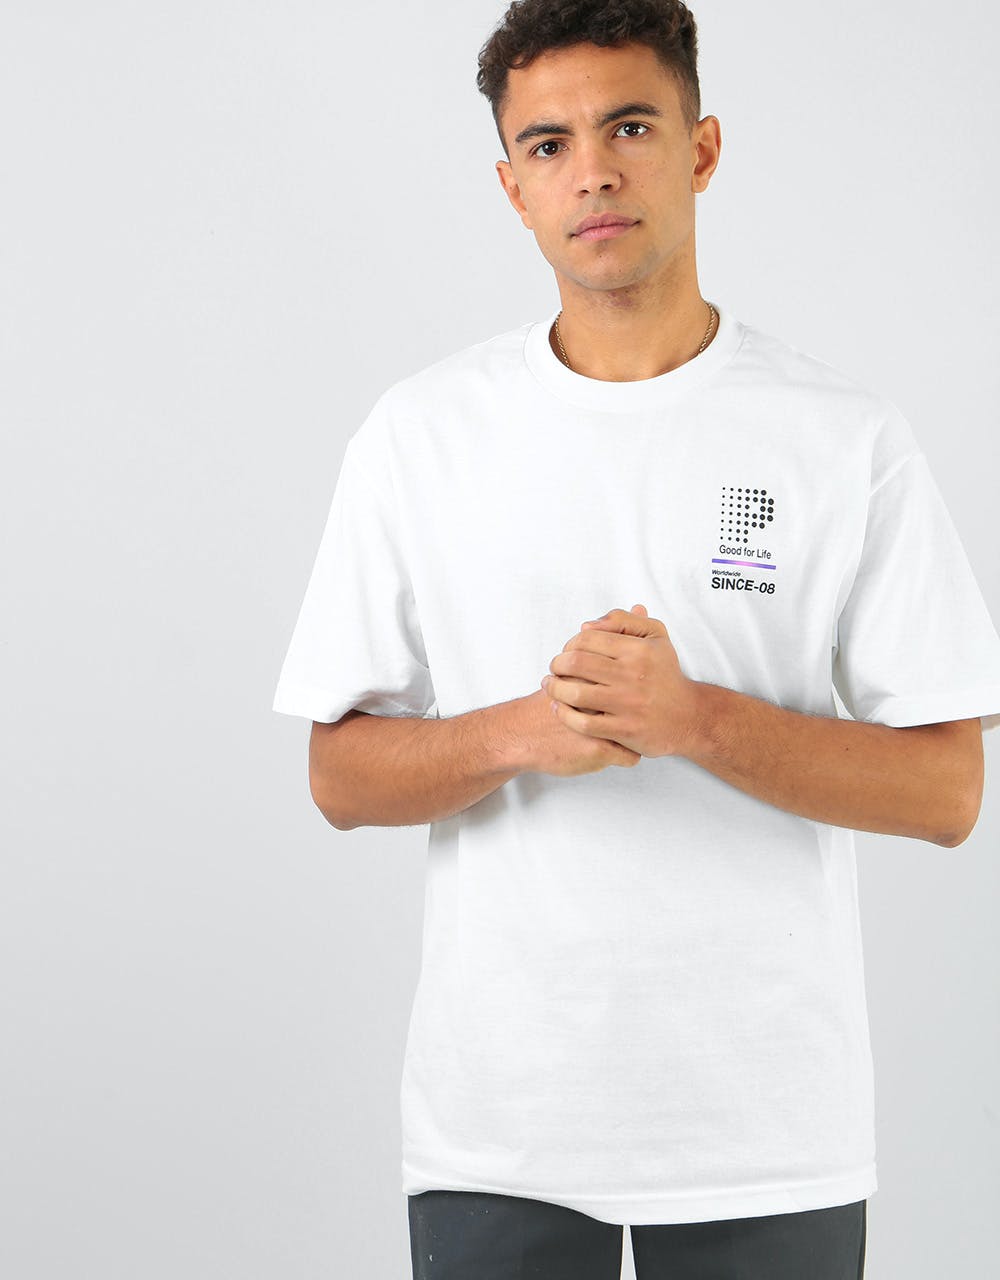 Primitive Dynamic T-Shirt - White